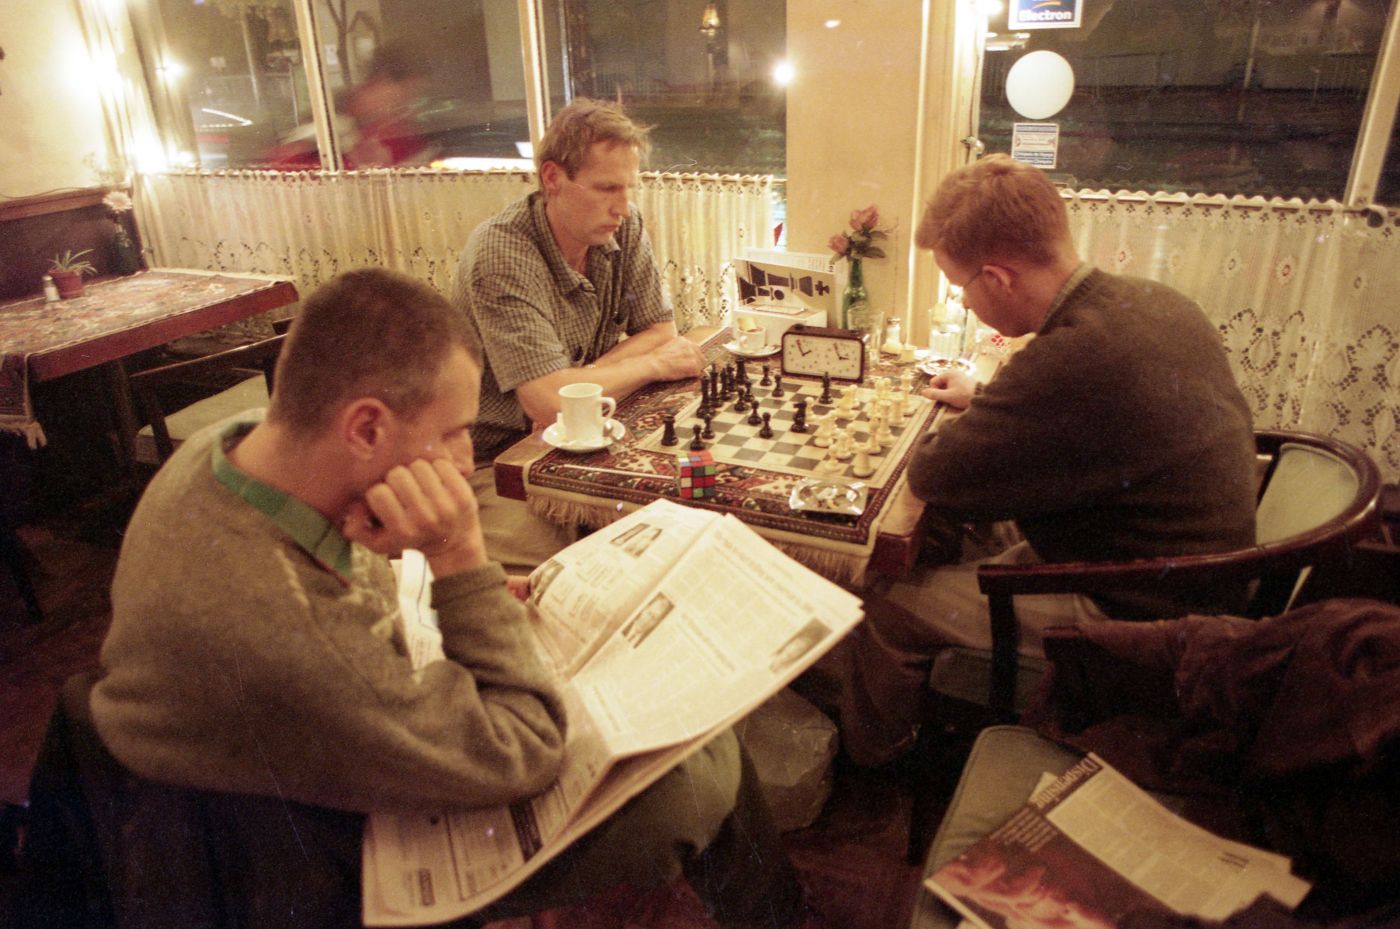 Photographie en couleur de trois hommes d’âge moyen, assis dans un café, le soir. Deux des hommes jouent aux échecs. Le troisième homme lit un journal à leur côté.